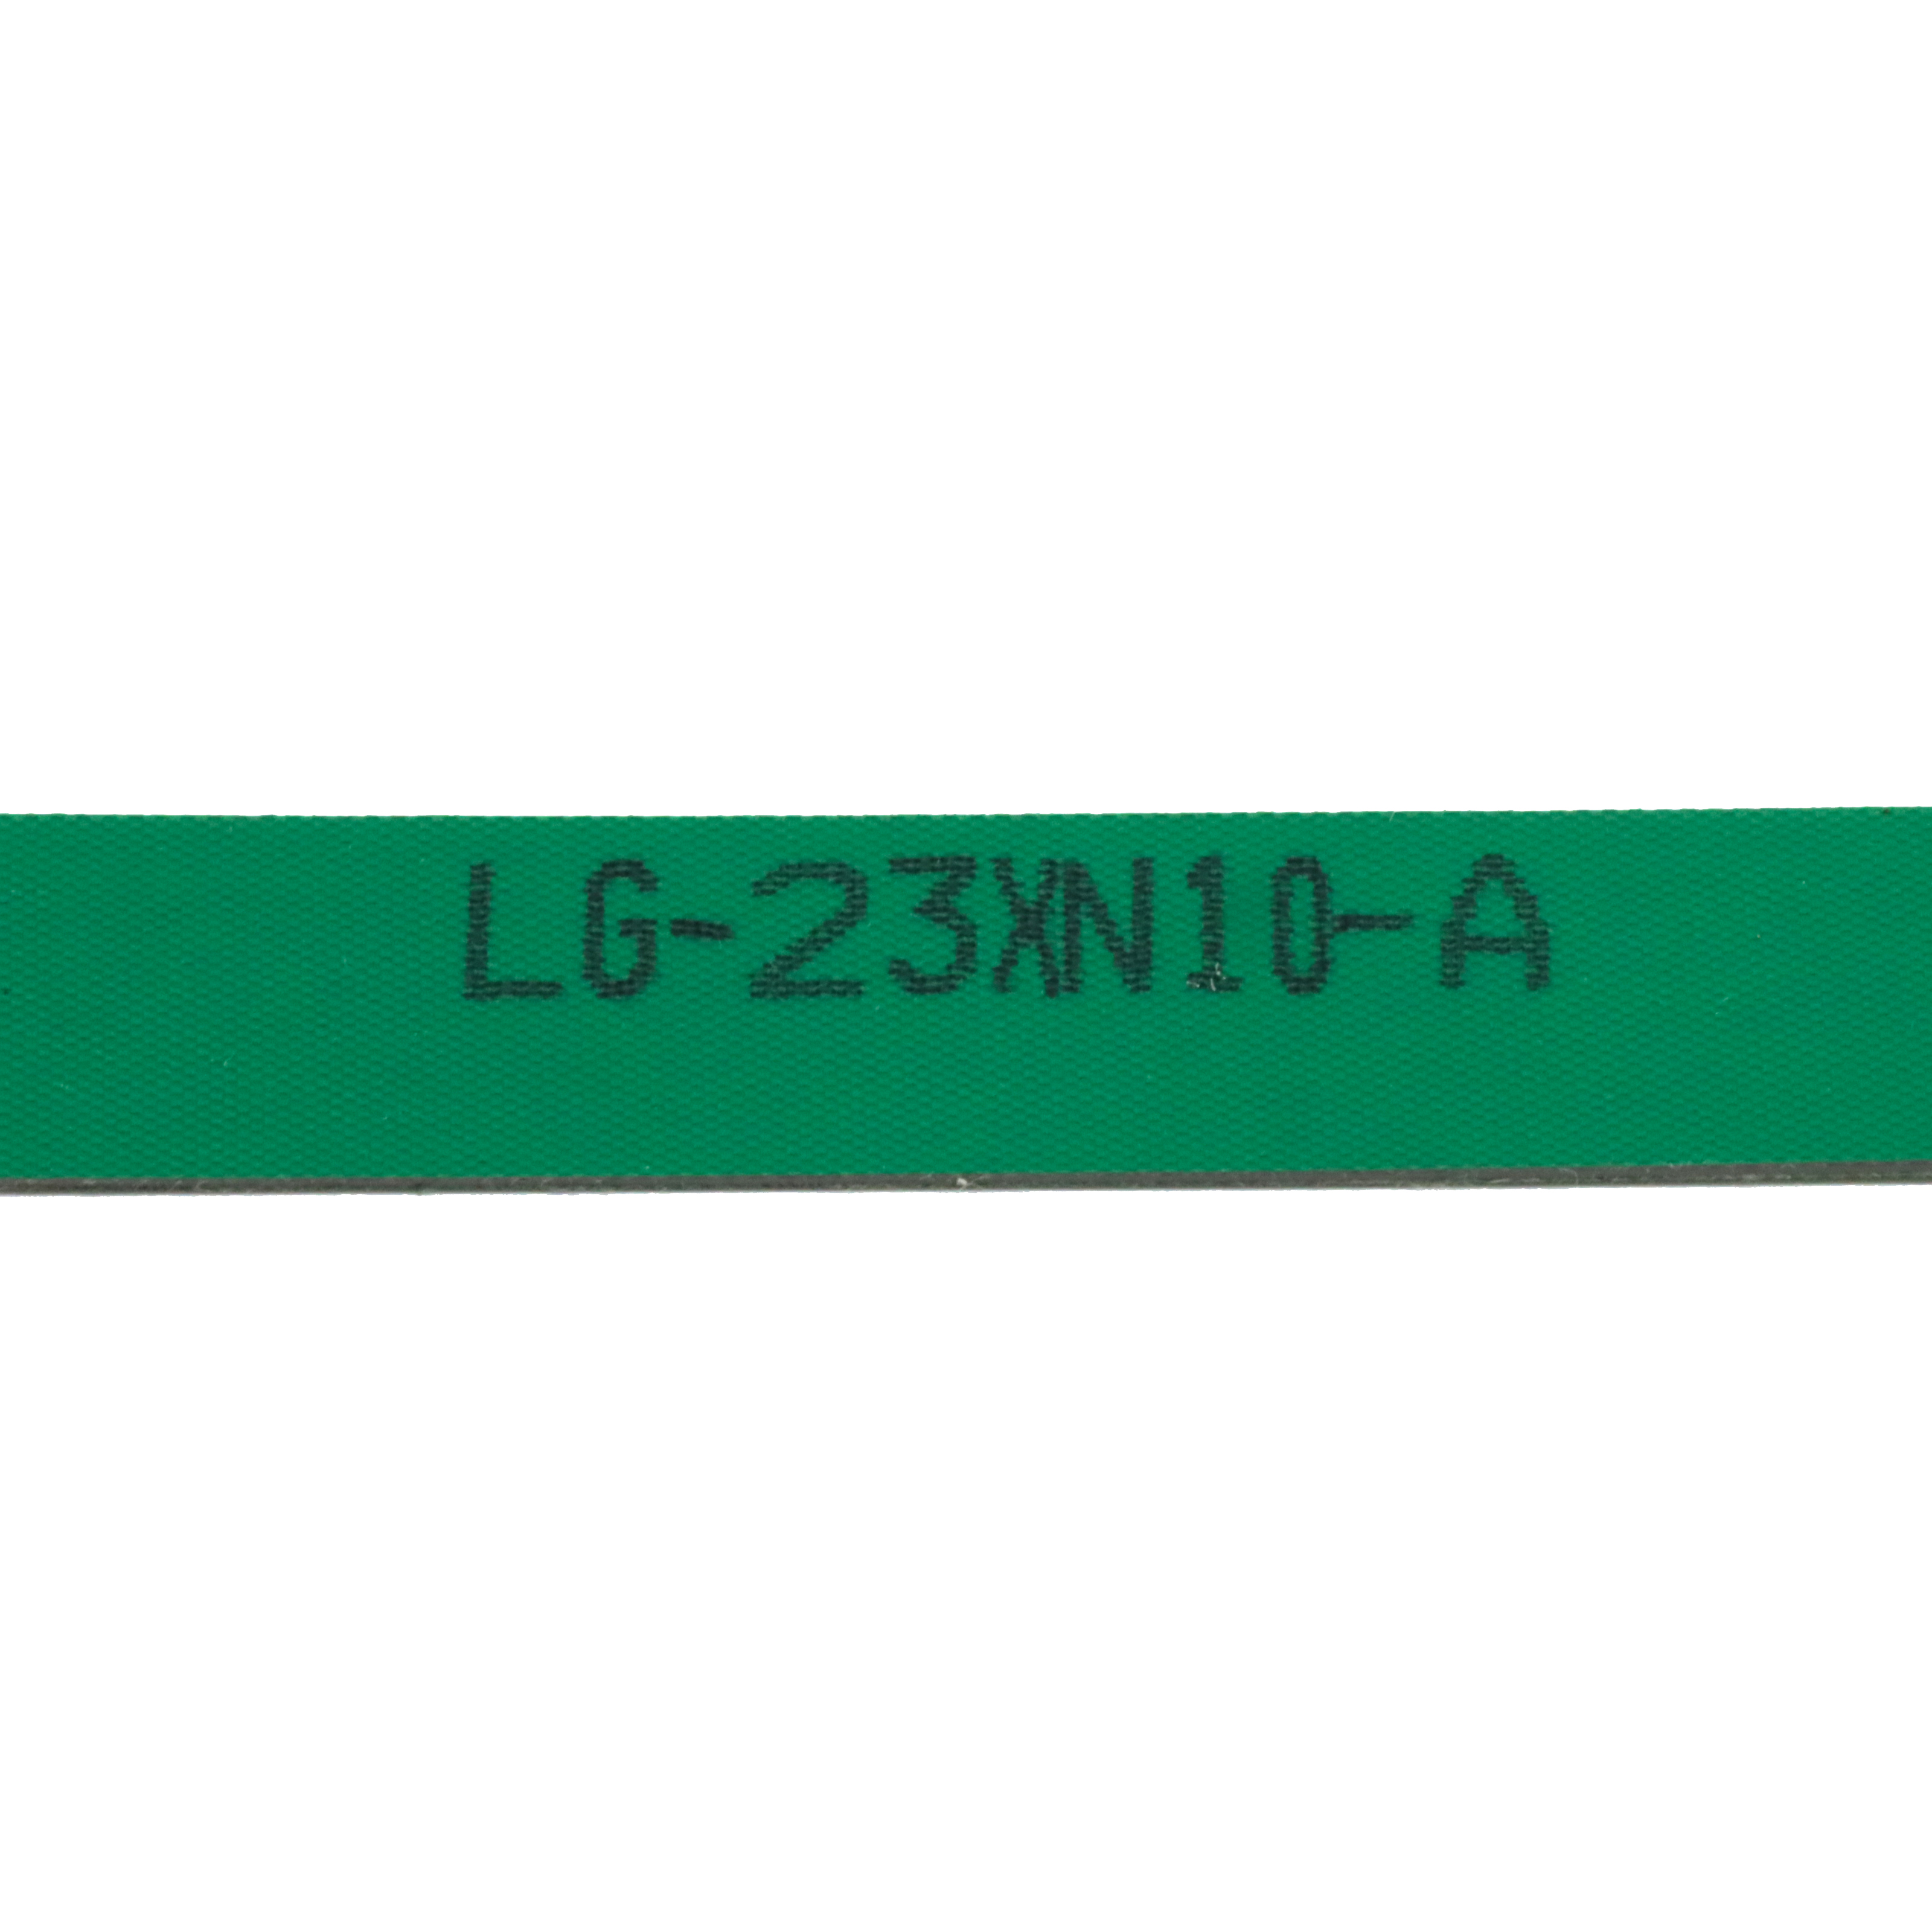 LG-23XN10-A